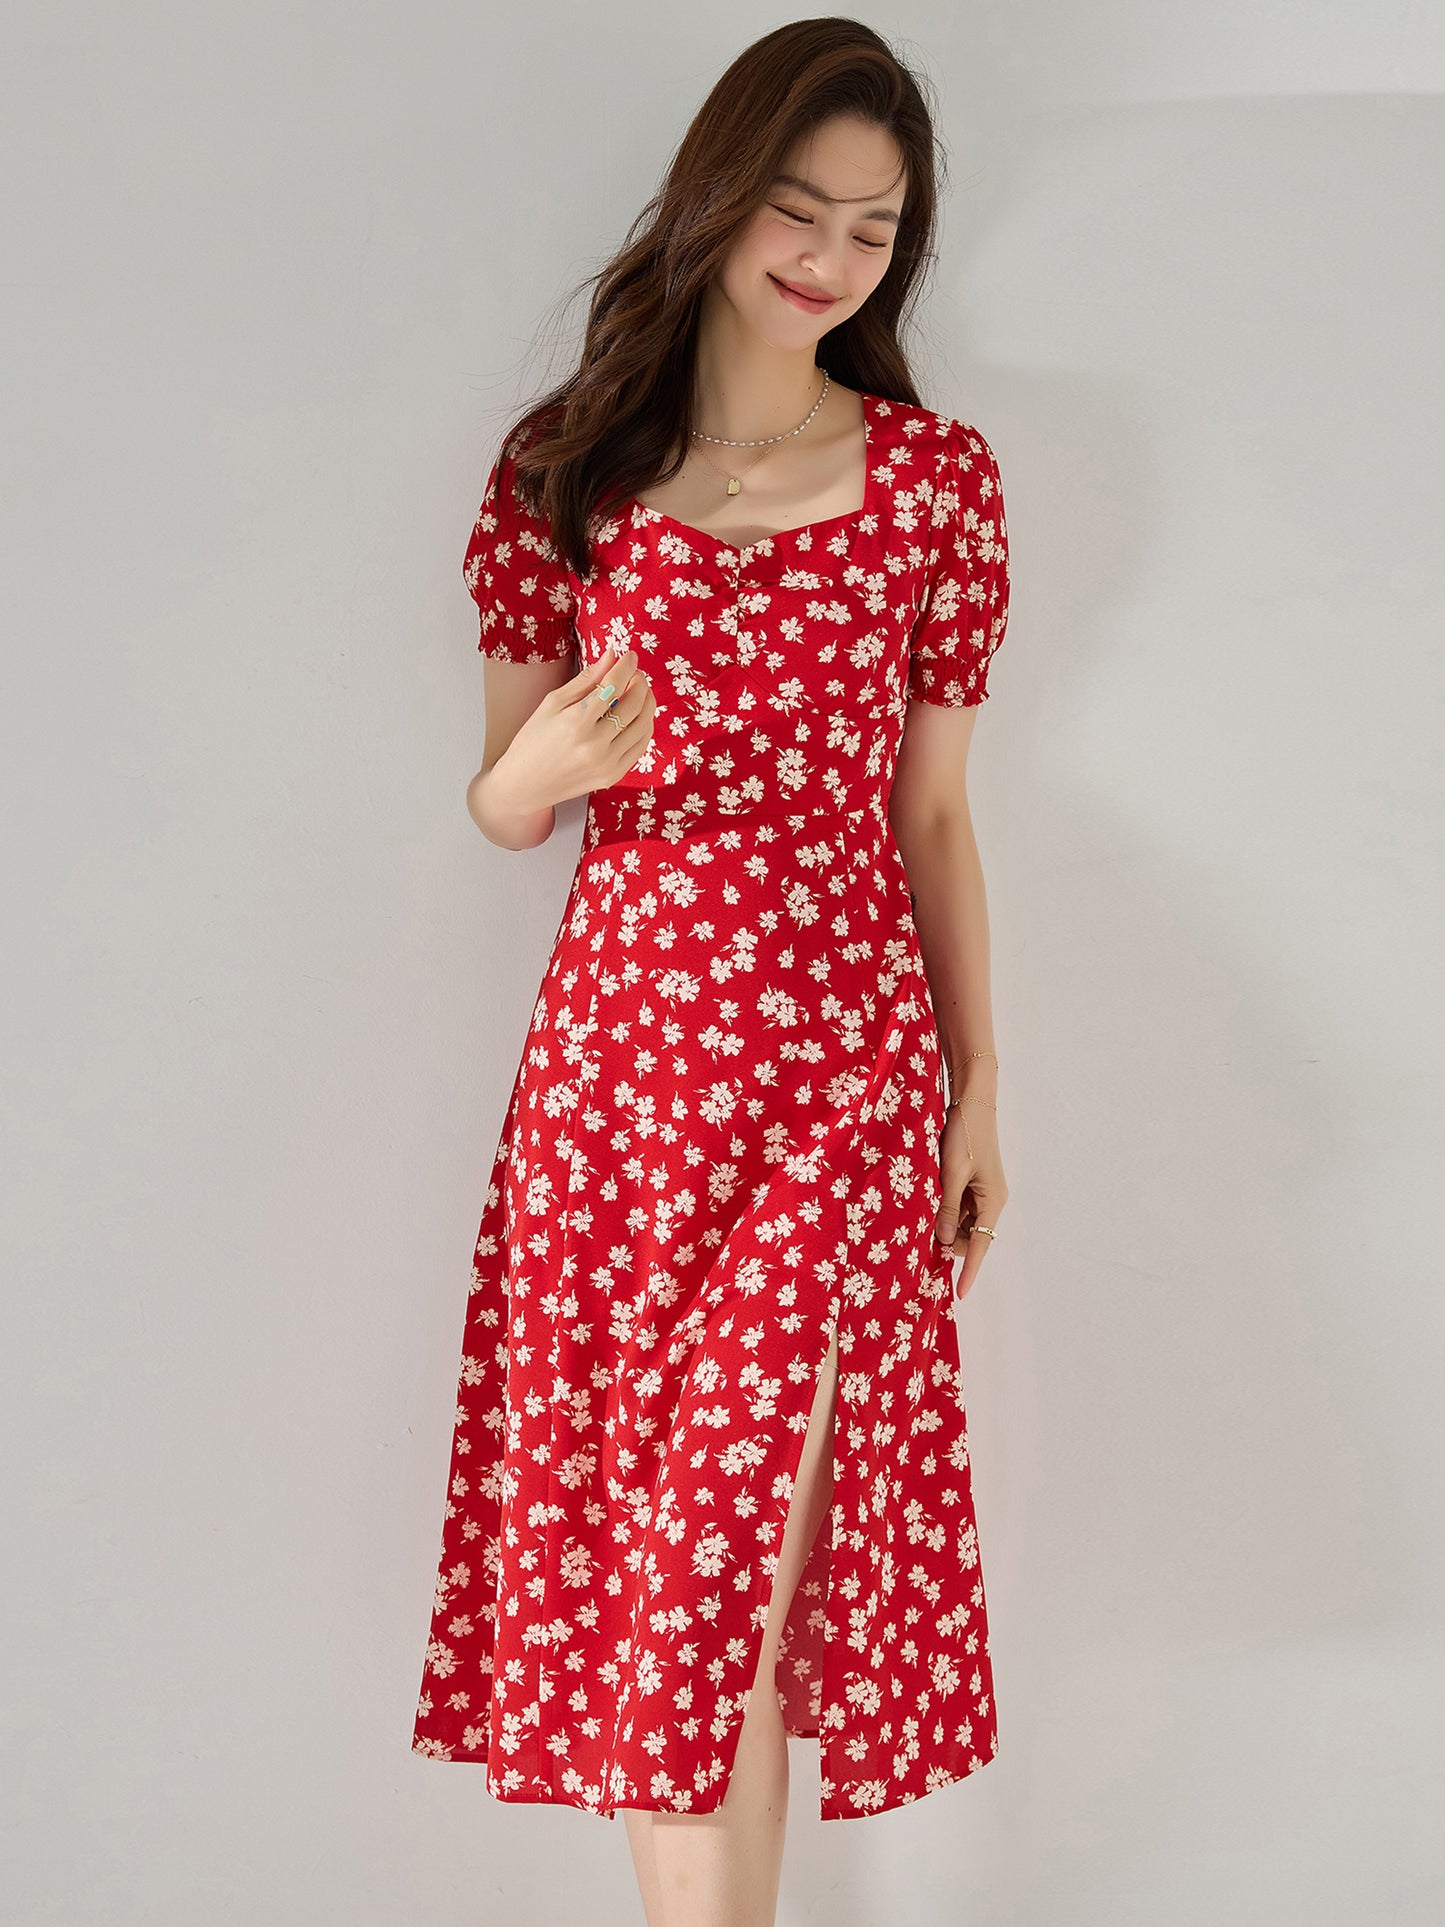 【C&M】Red Printed Dress